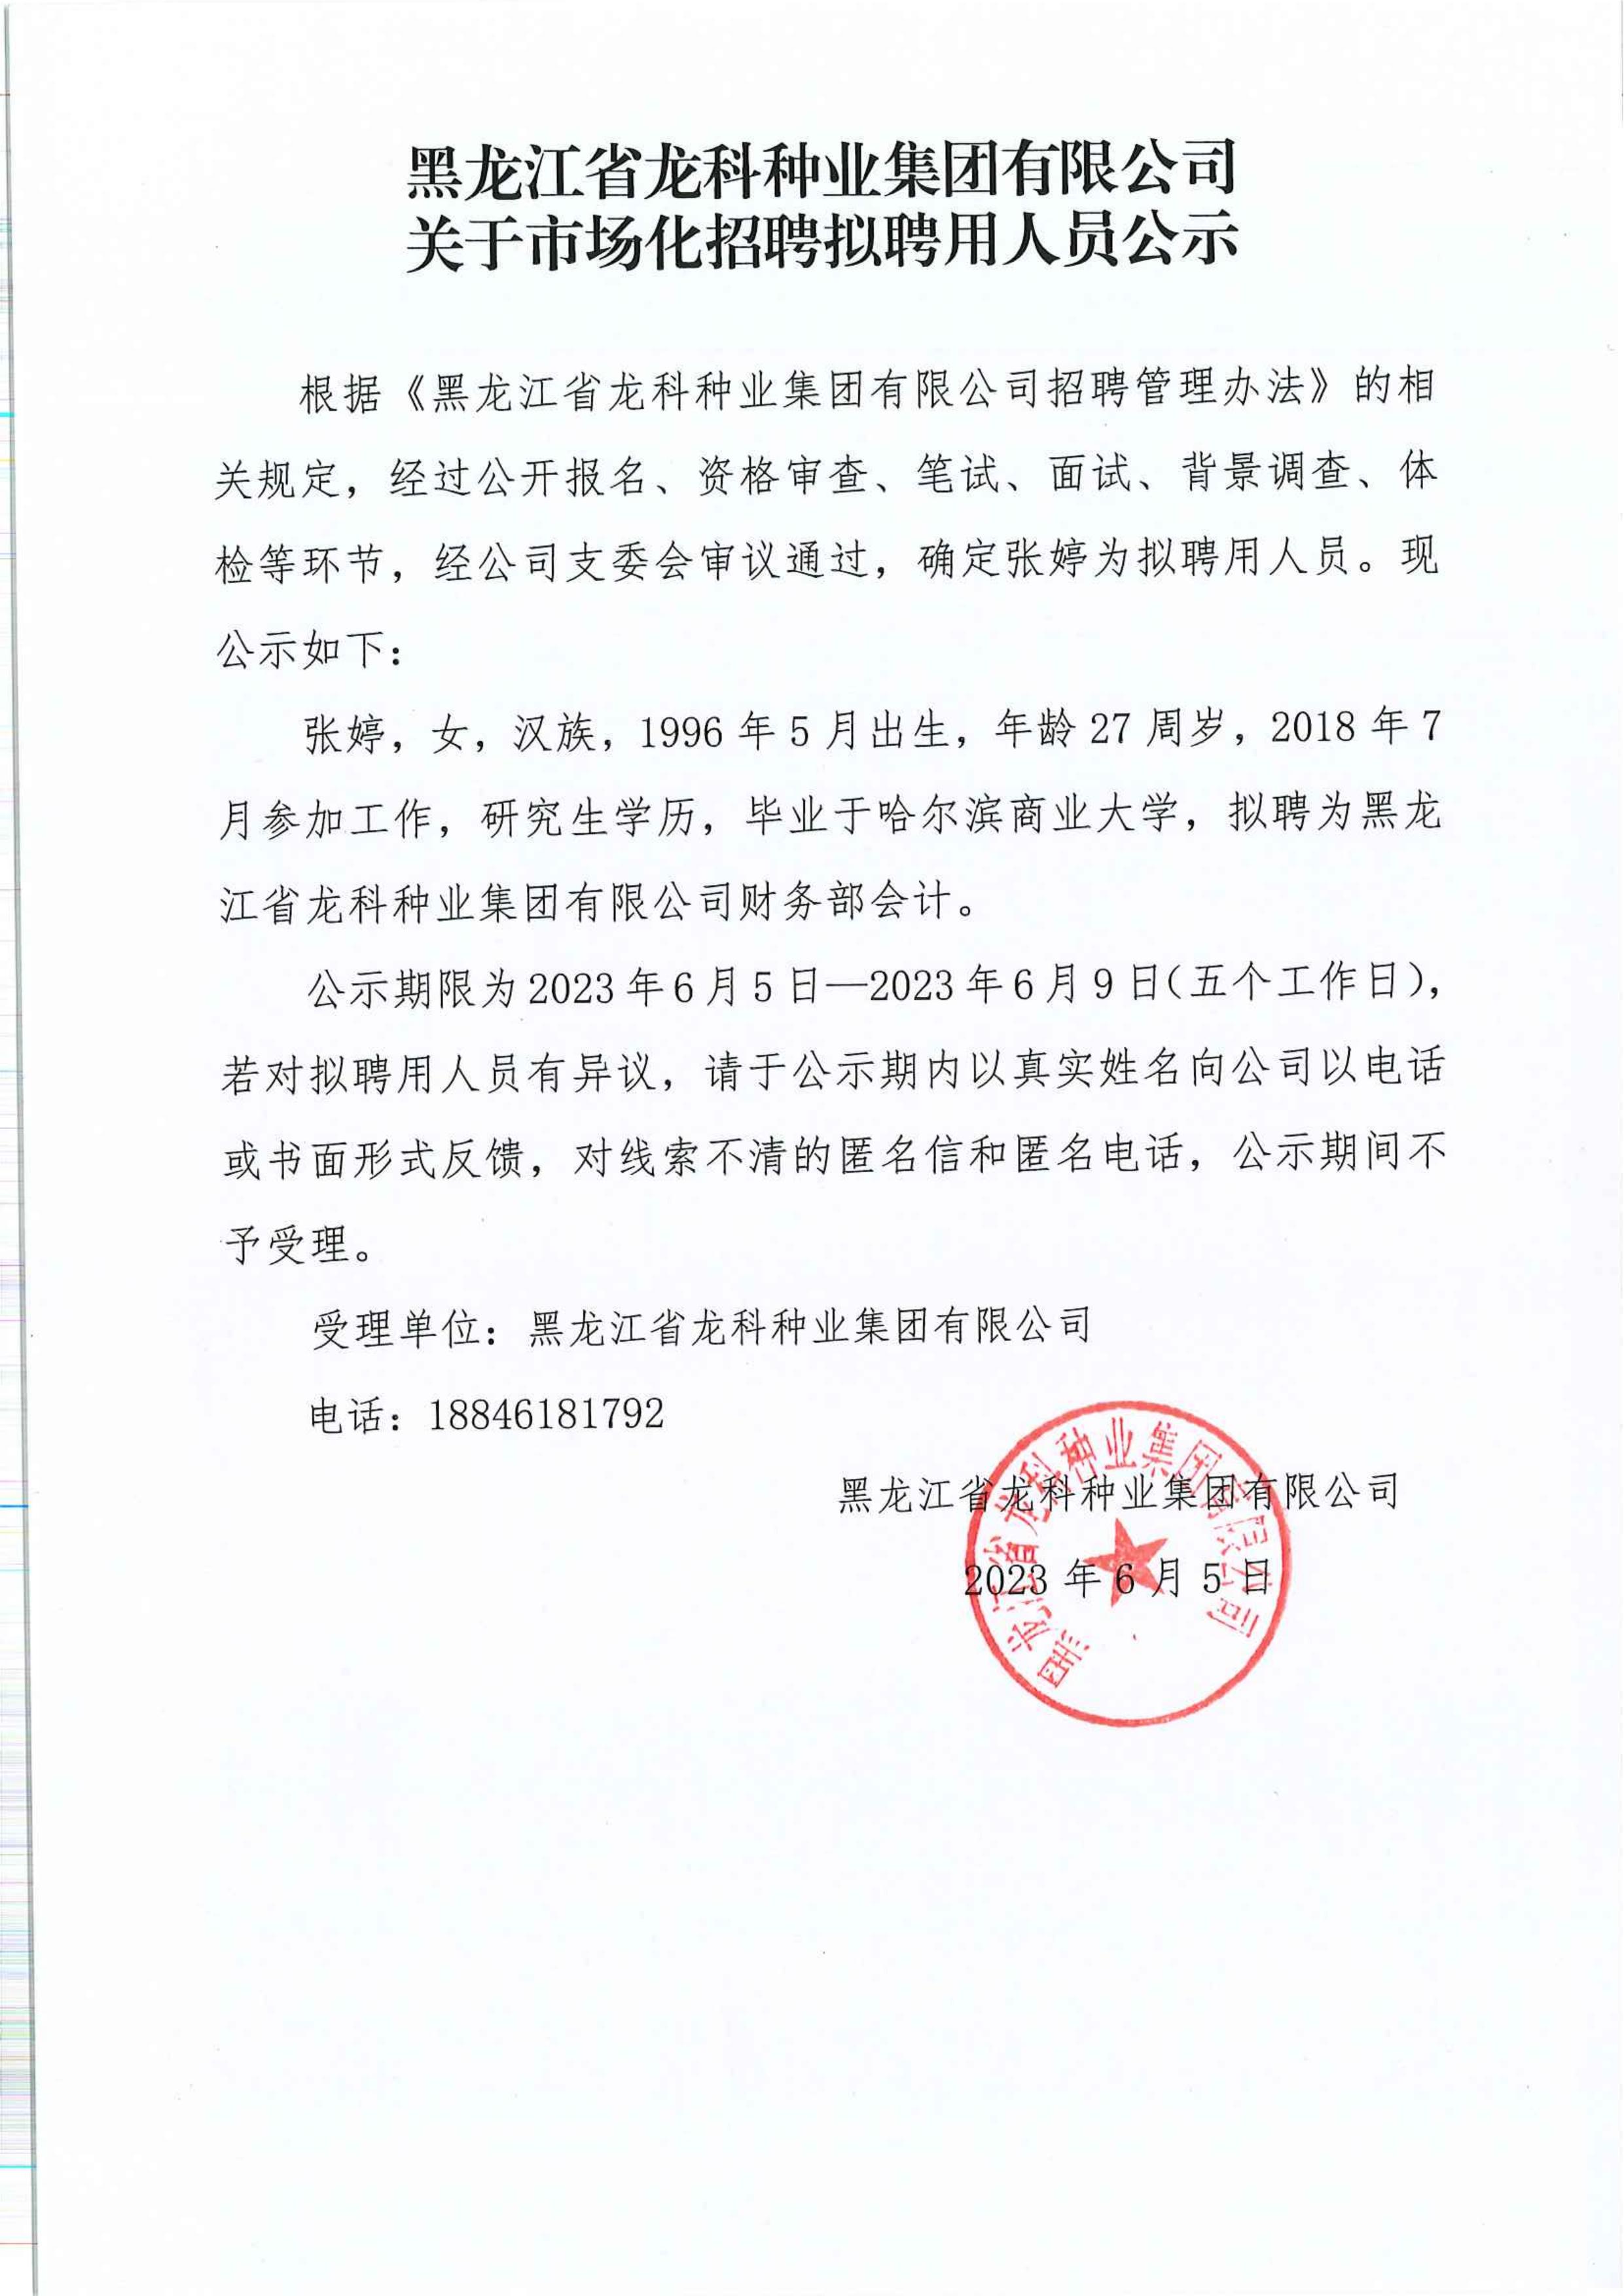 黑龙江省龙科种业集团有限公司关于市场化招聘拟聘用人员公示_00.jpg